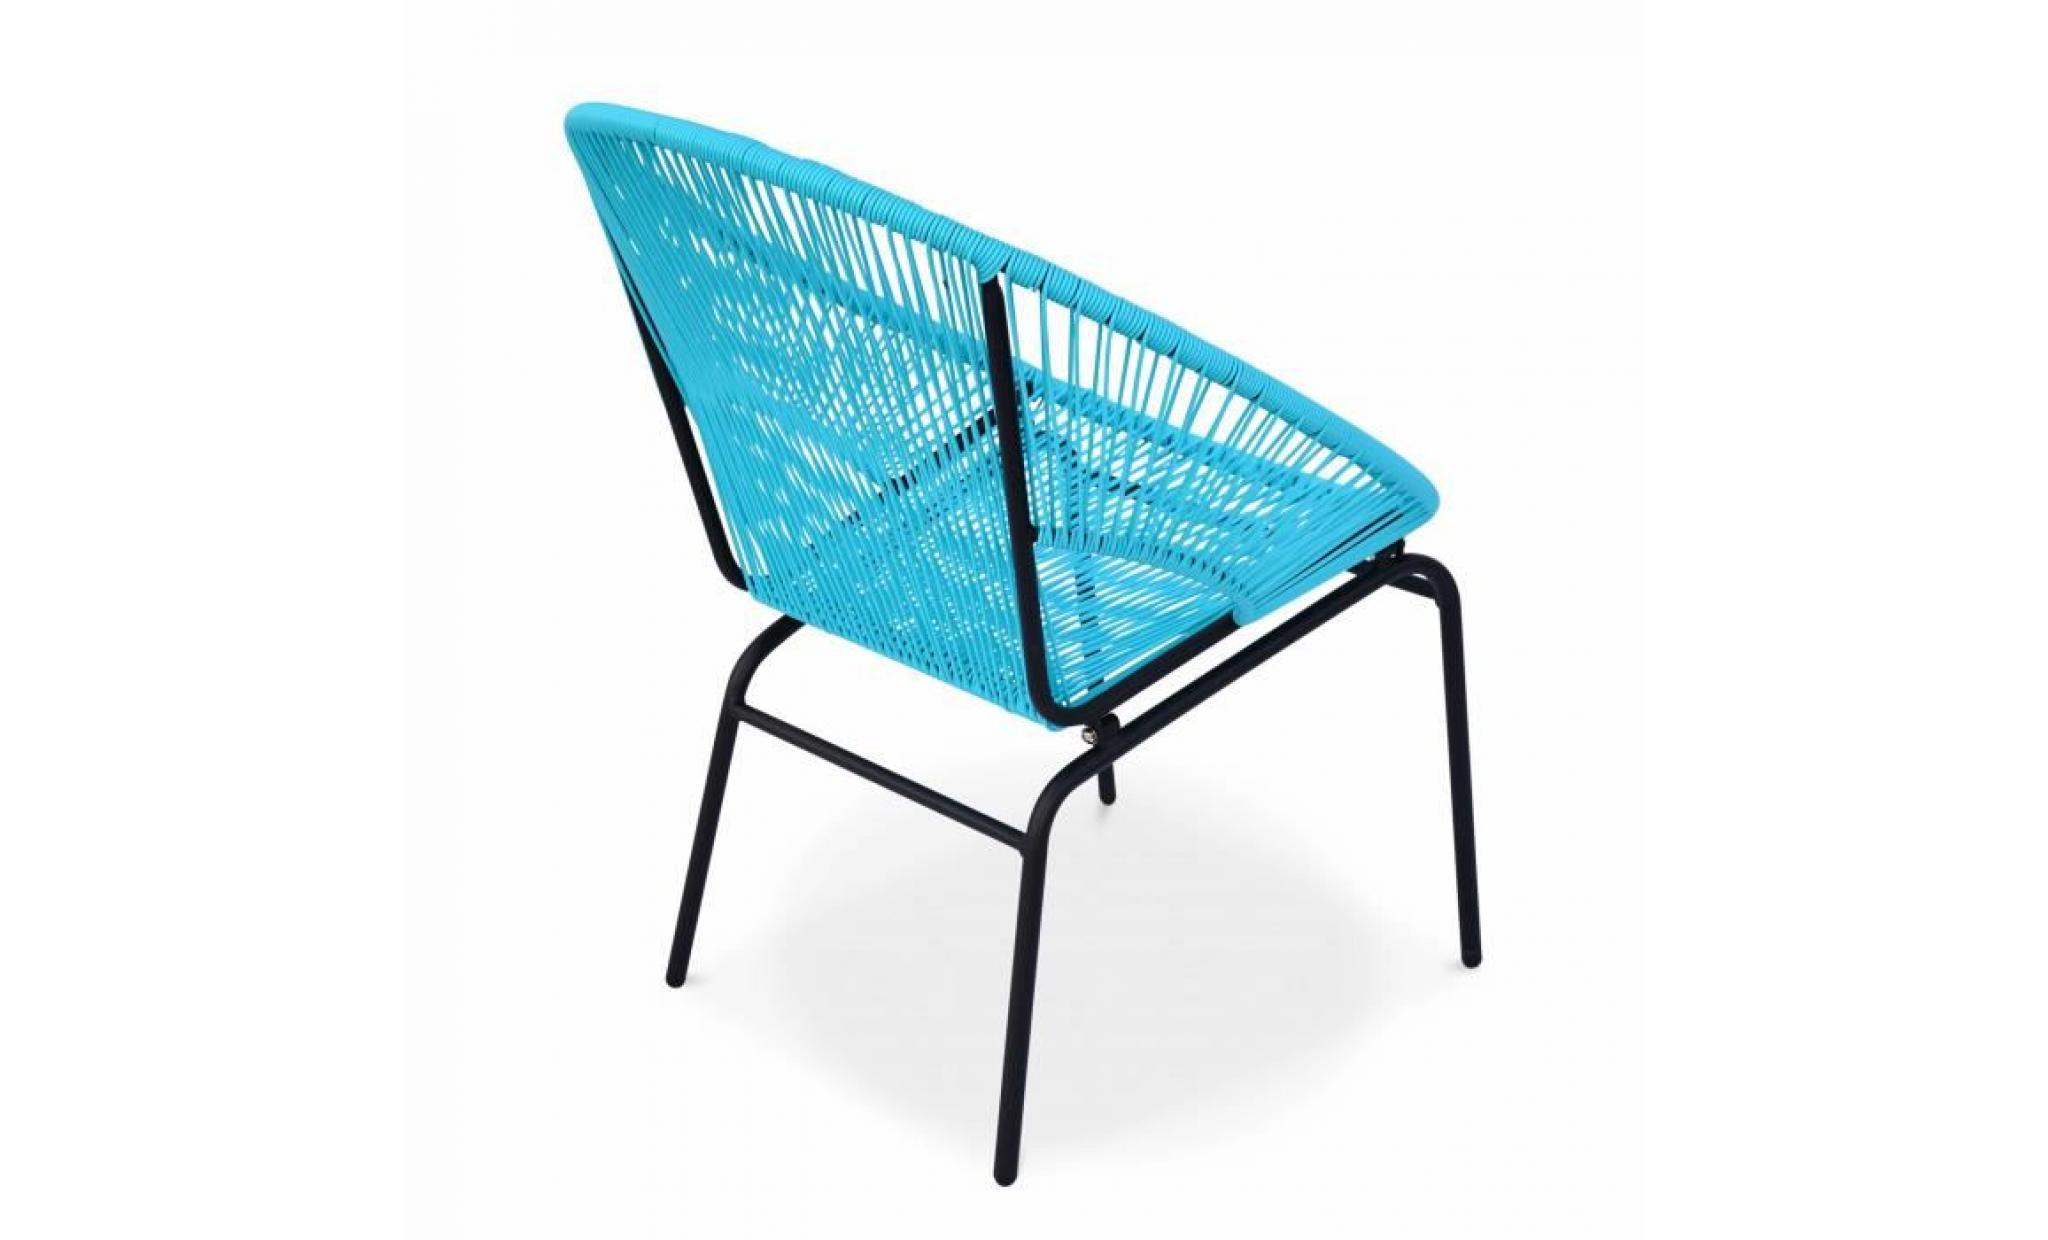 2 fauteuils design   mexico turquoise   fauteuils design cordage pvc par lot de 2 pas cher